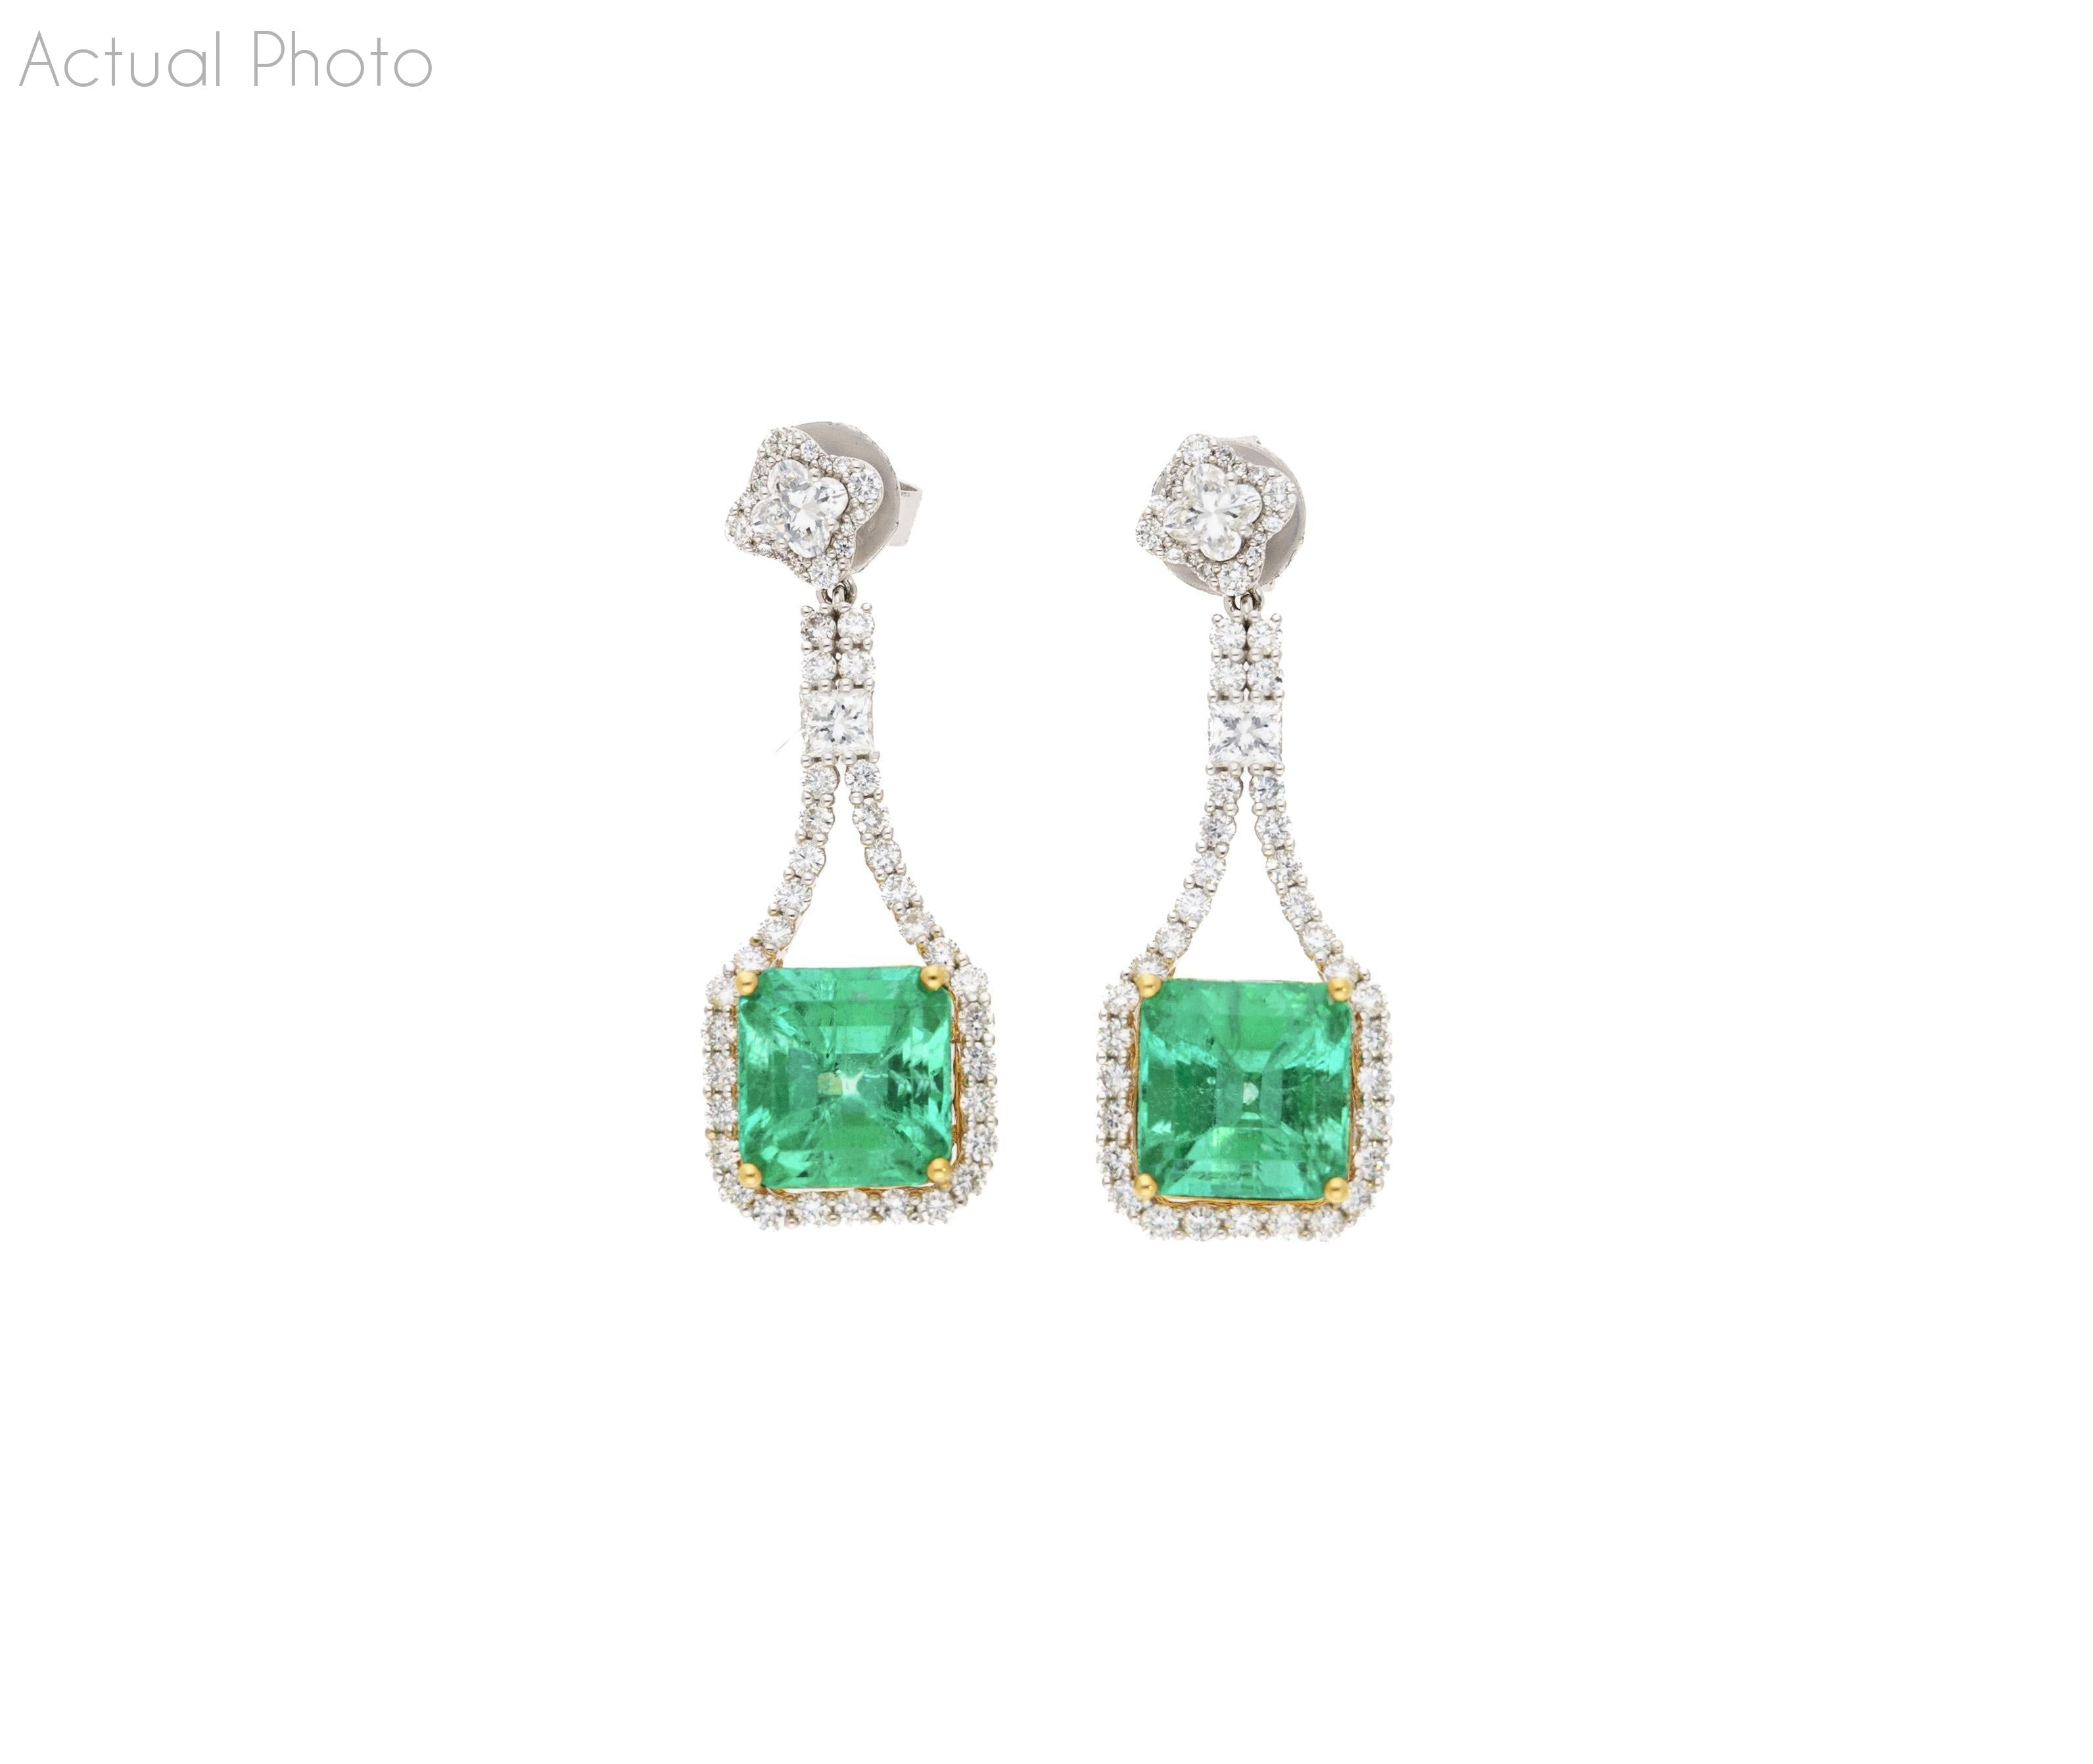 15 Carat Colombian Minor Oil Emerald & Diamond Dangle Earrings in 18K White Gold